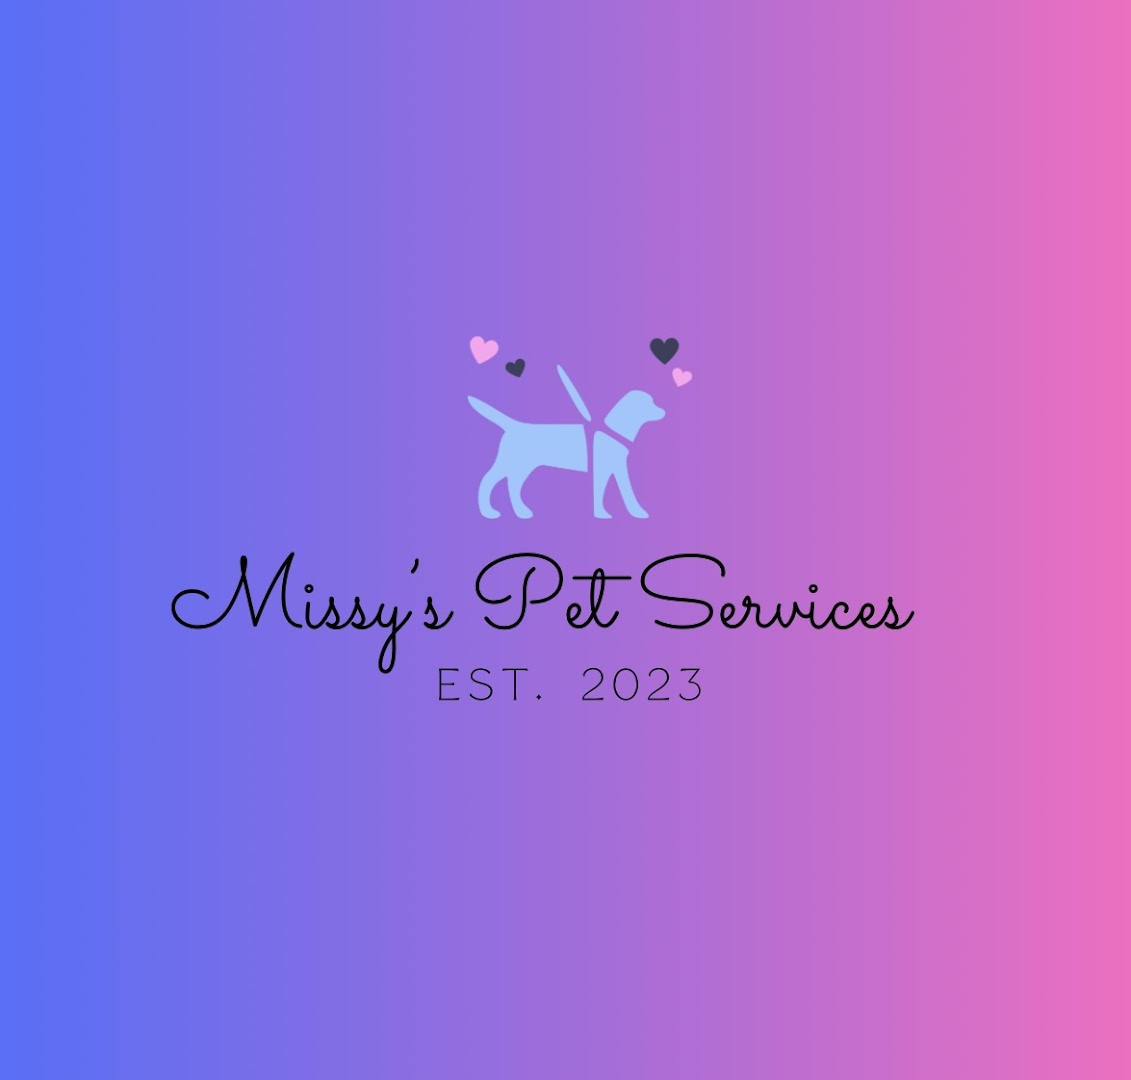 Missy's Pet Services